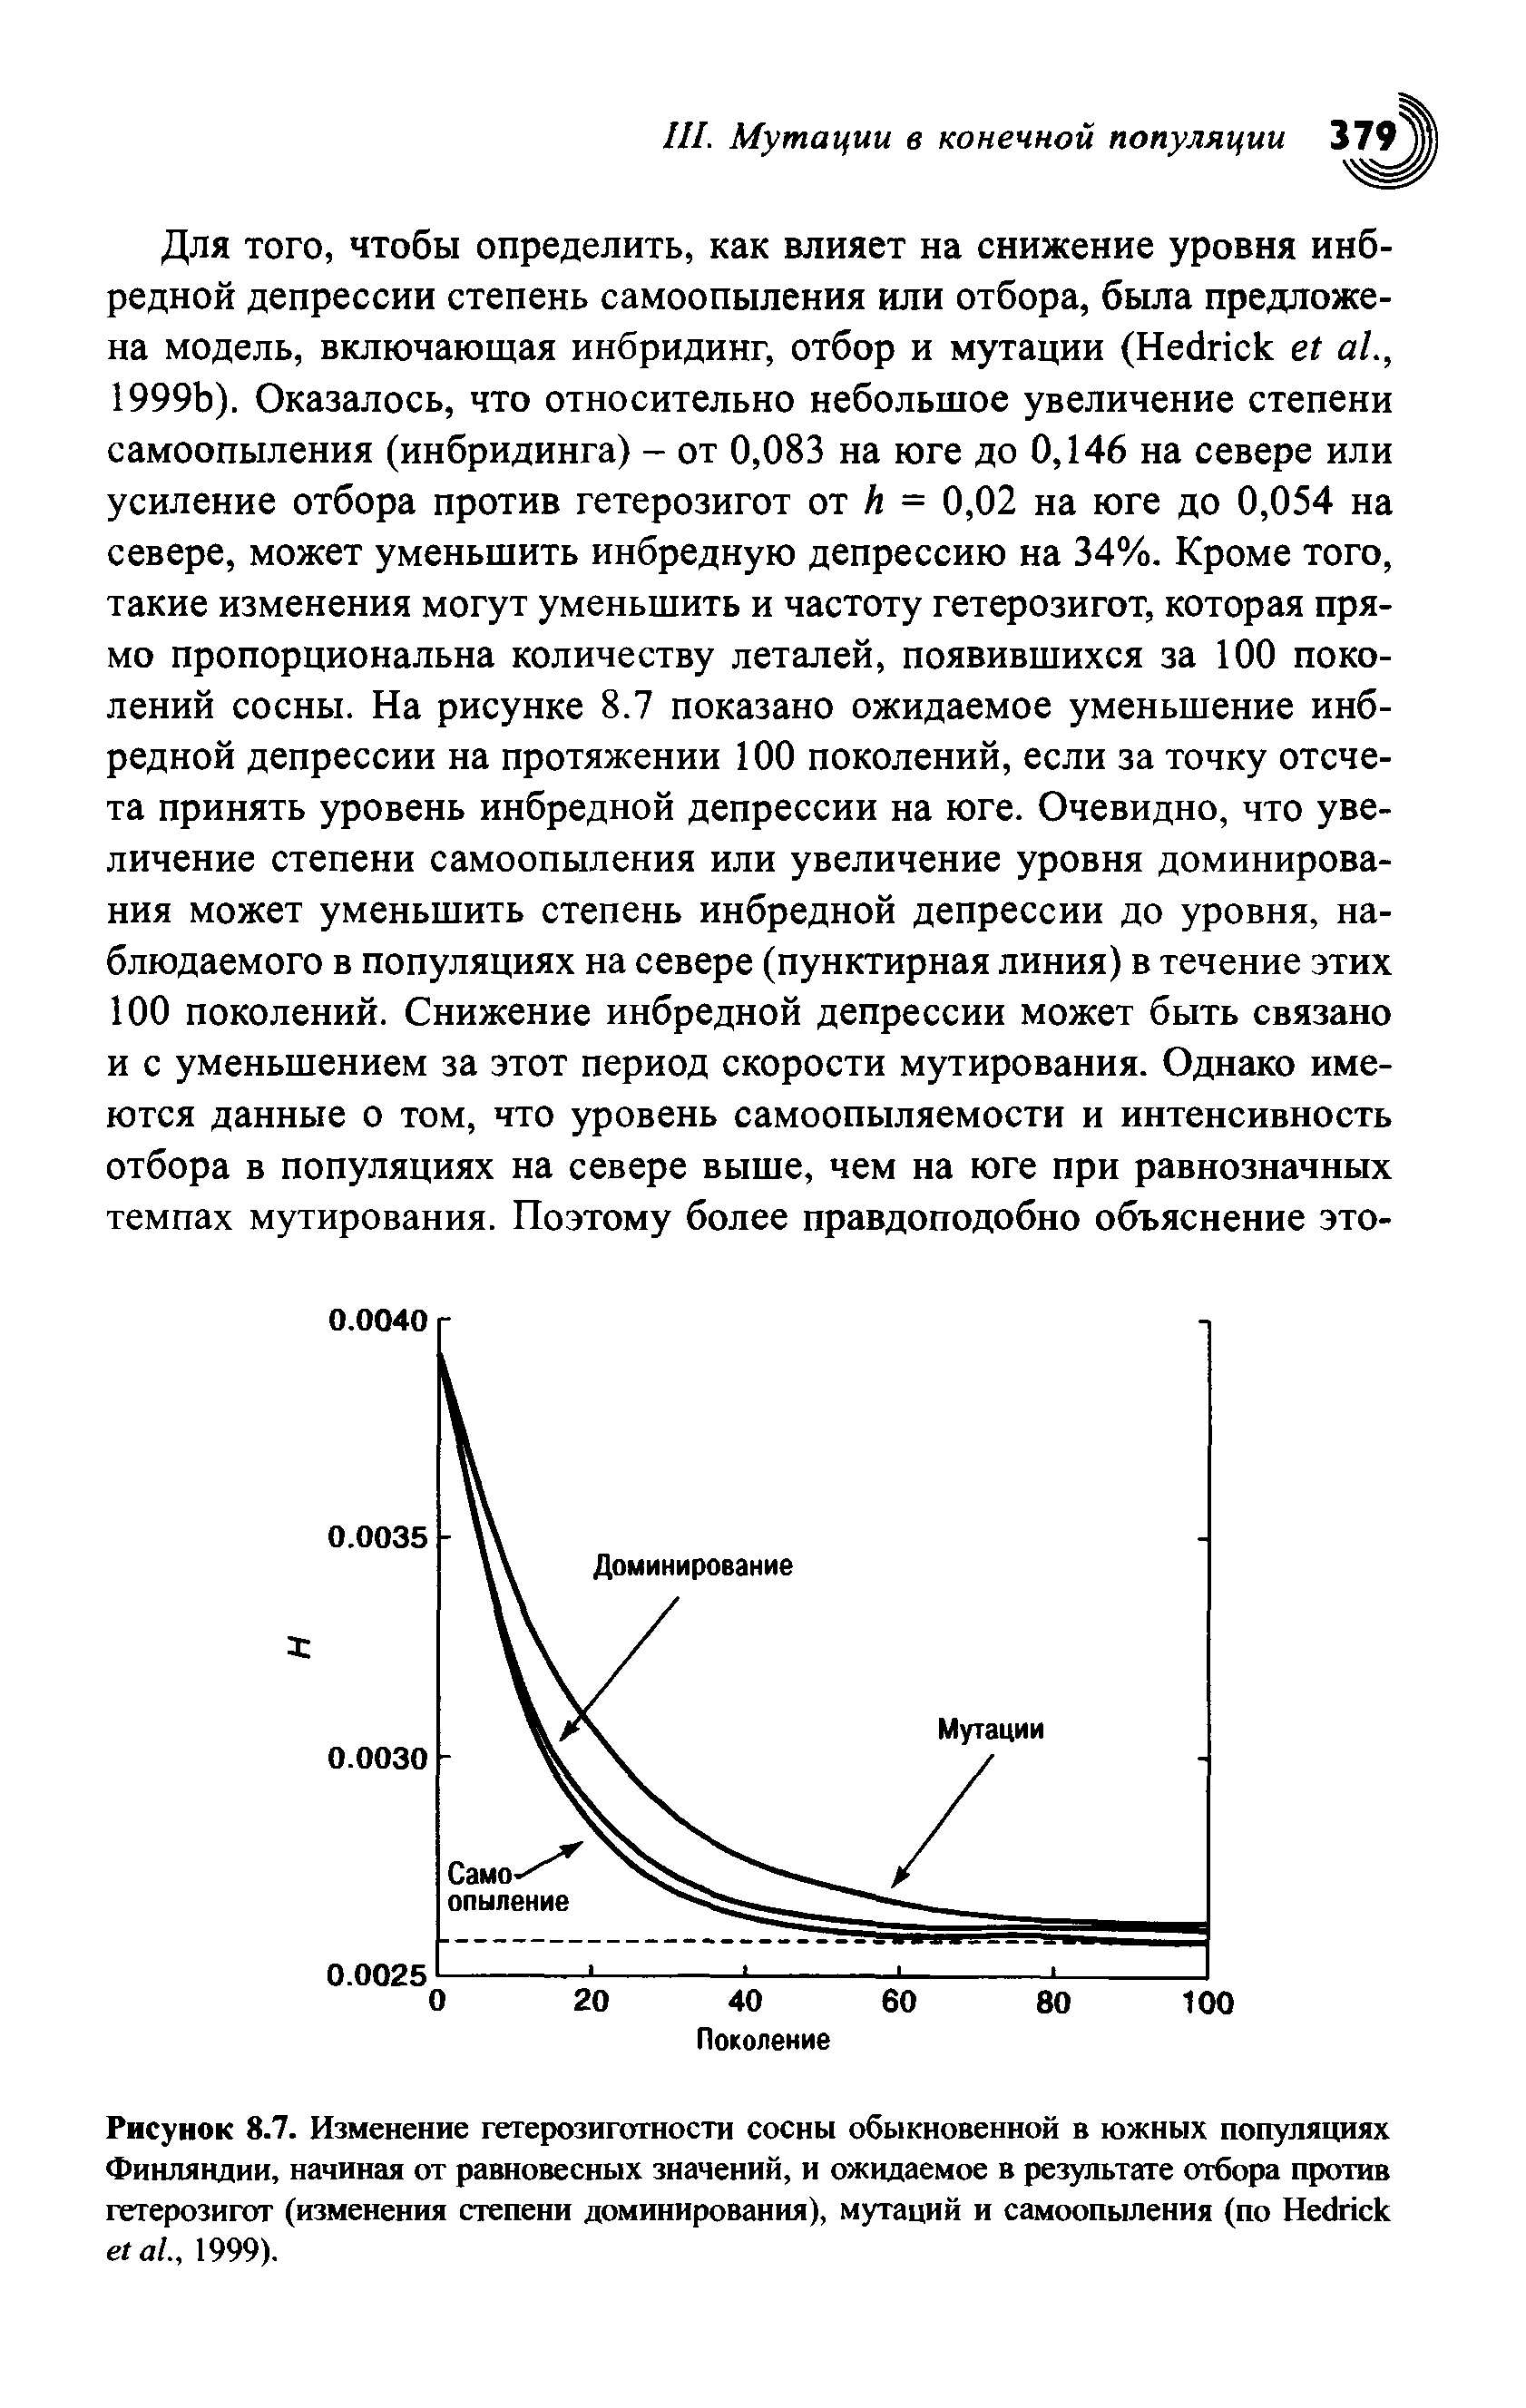 Рисунок 8.7. Изменение гетерозиготности сосны обыкновенной в южных популяциях Финляндии, начиная от равновесных значений, и ожидаемое в результате отбора против гетерозигот (изменения степени доминирования), мутаций и самоопыления (по H ., 1999).